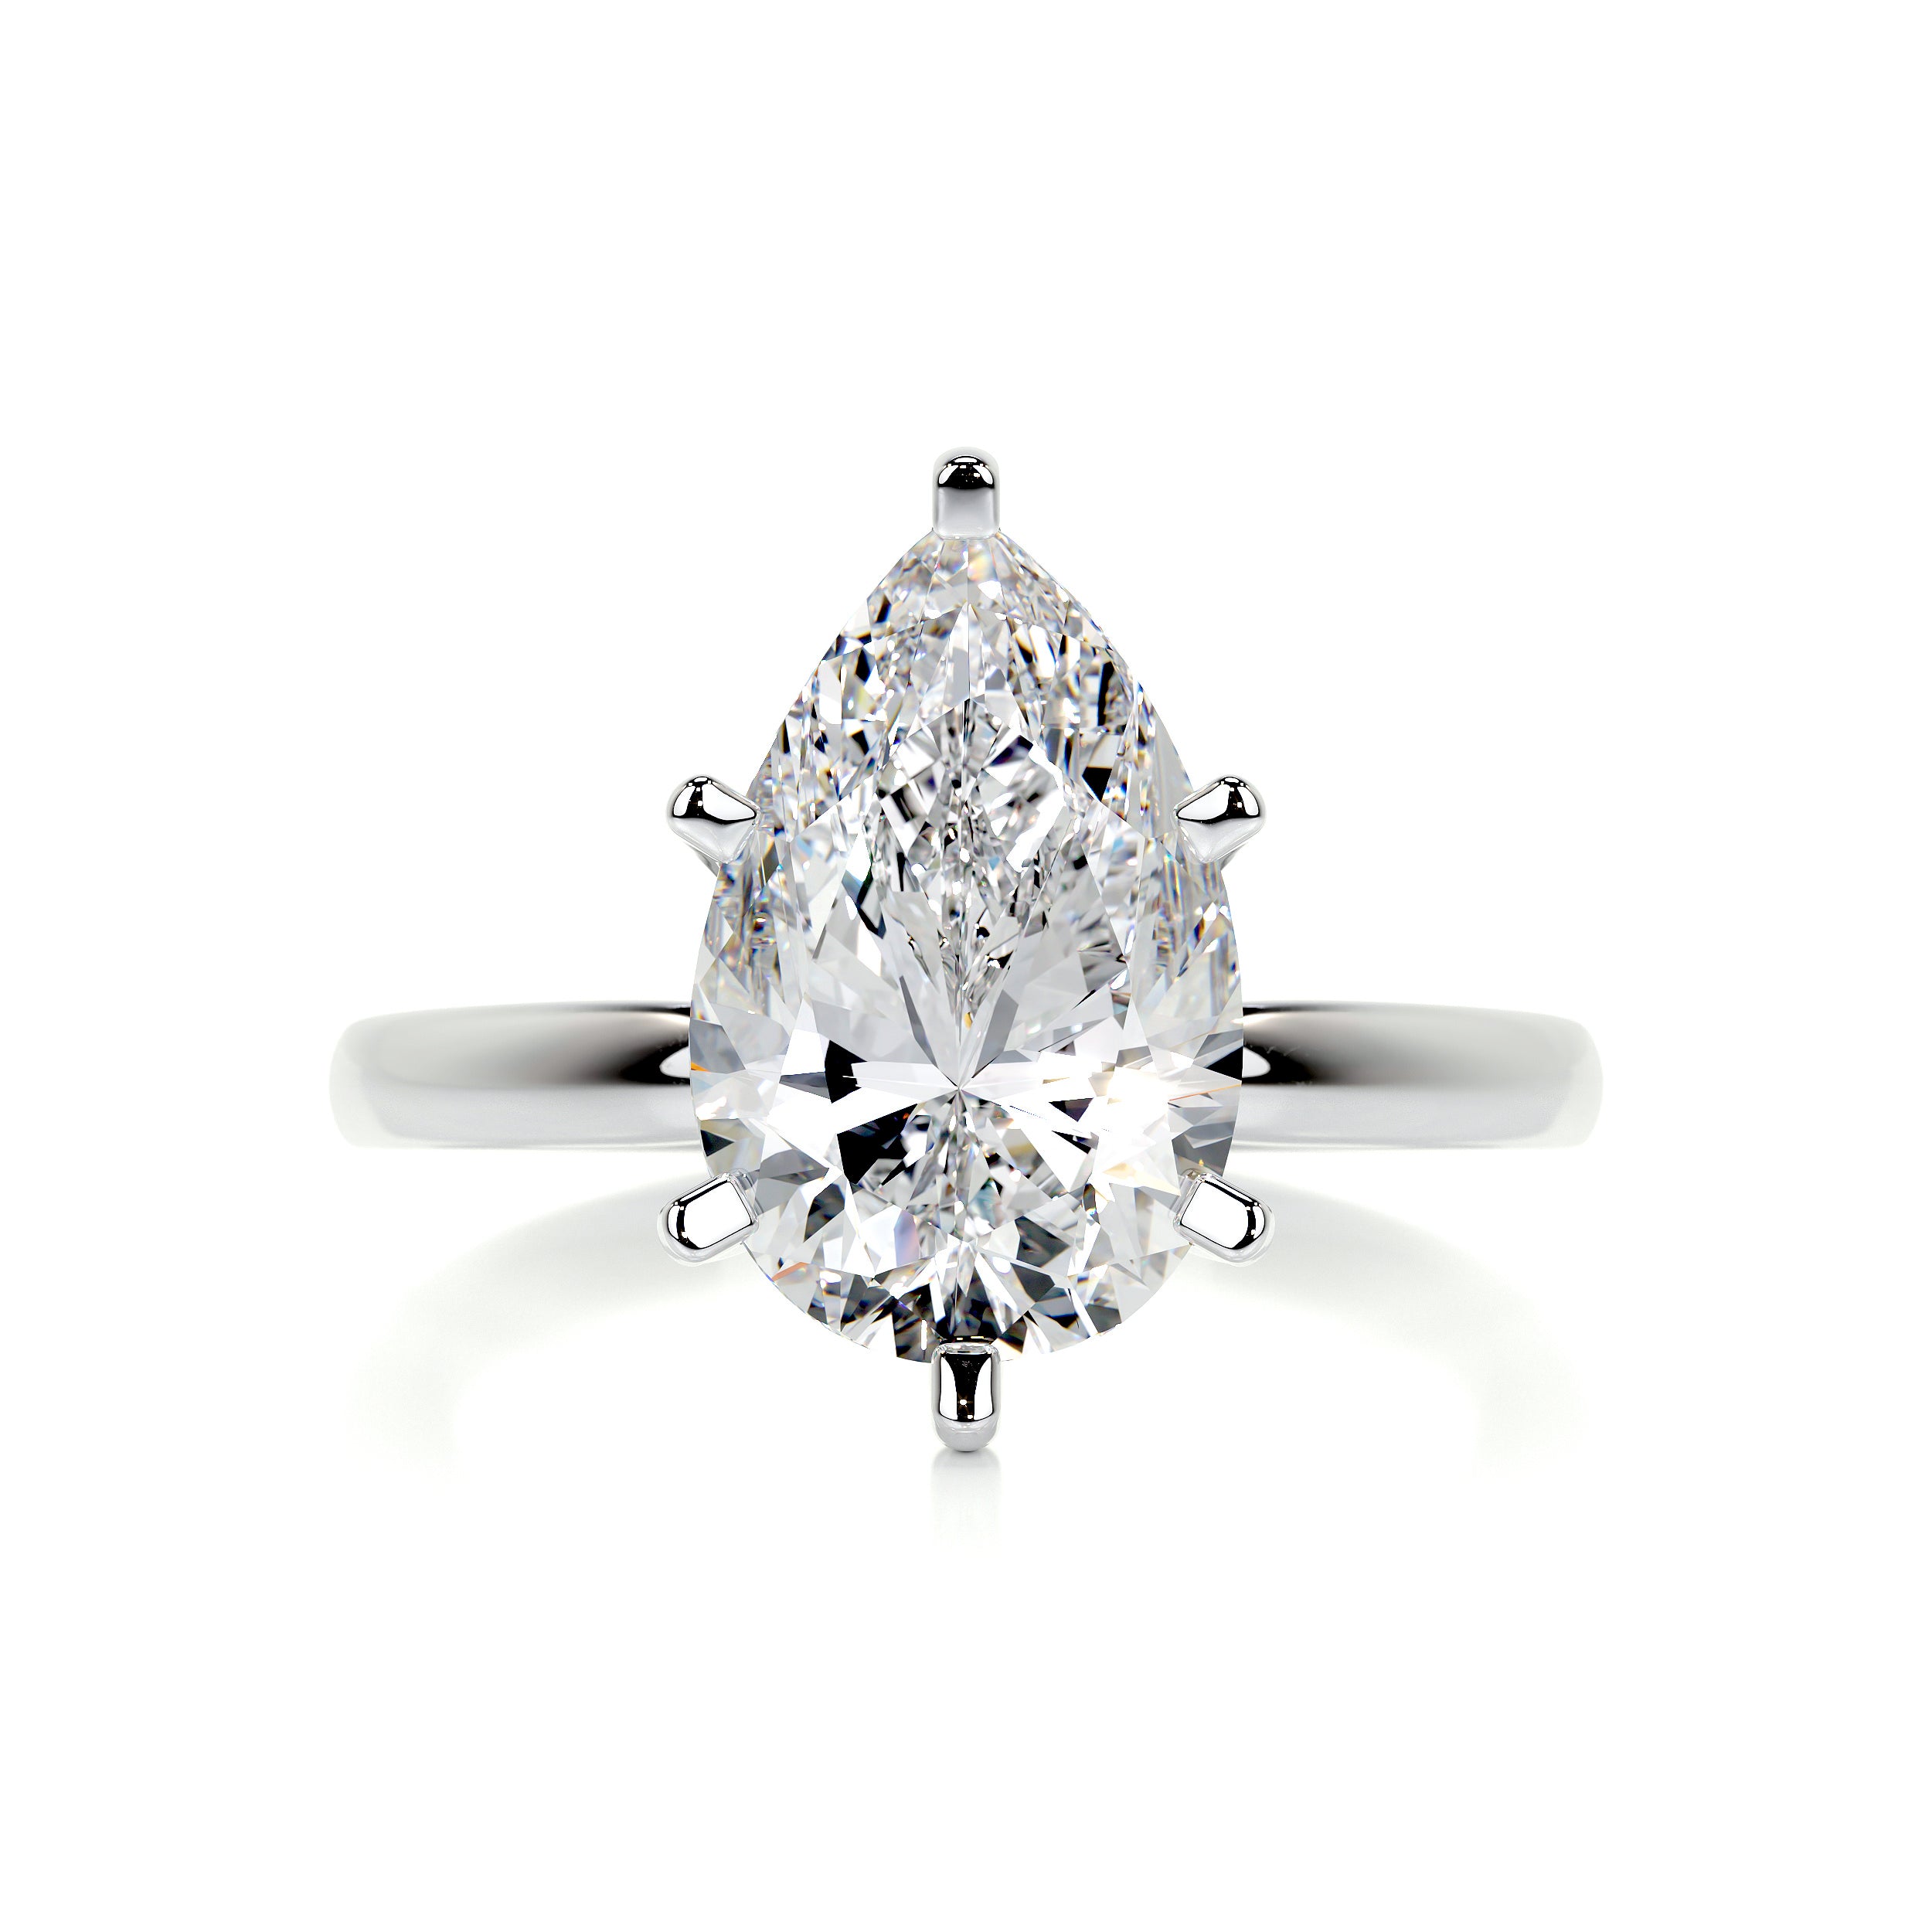 Adaline Diamond Engagement Ring   (1 Carat) -14K White Gold